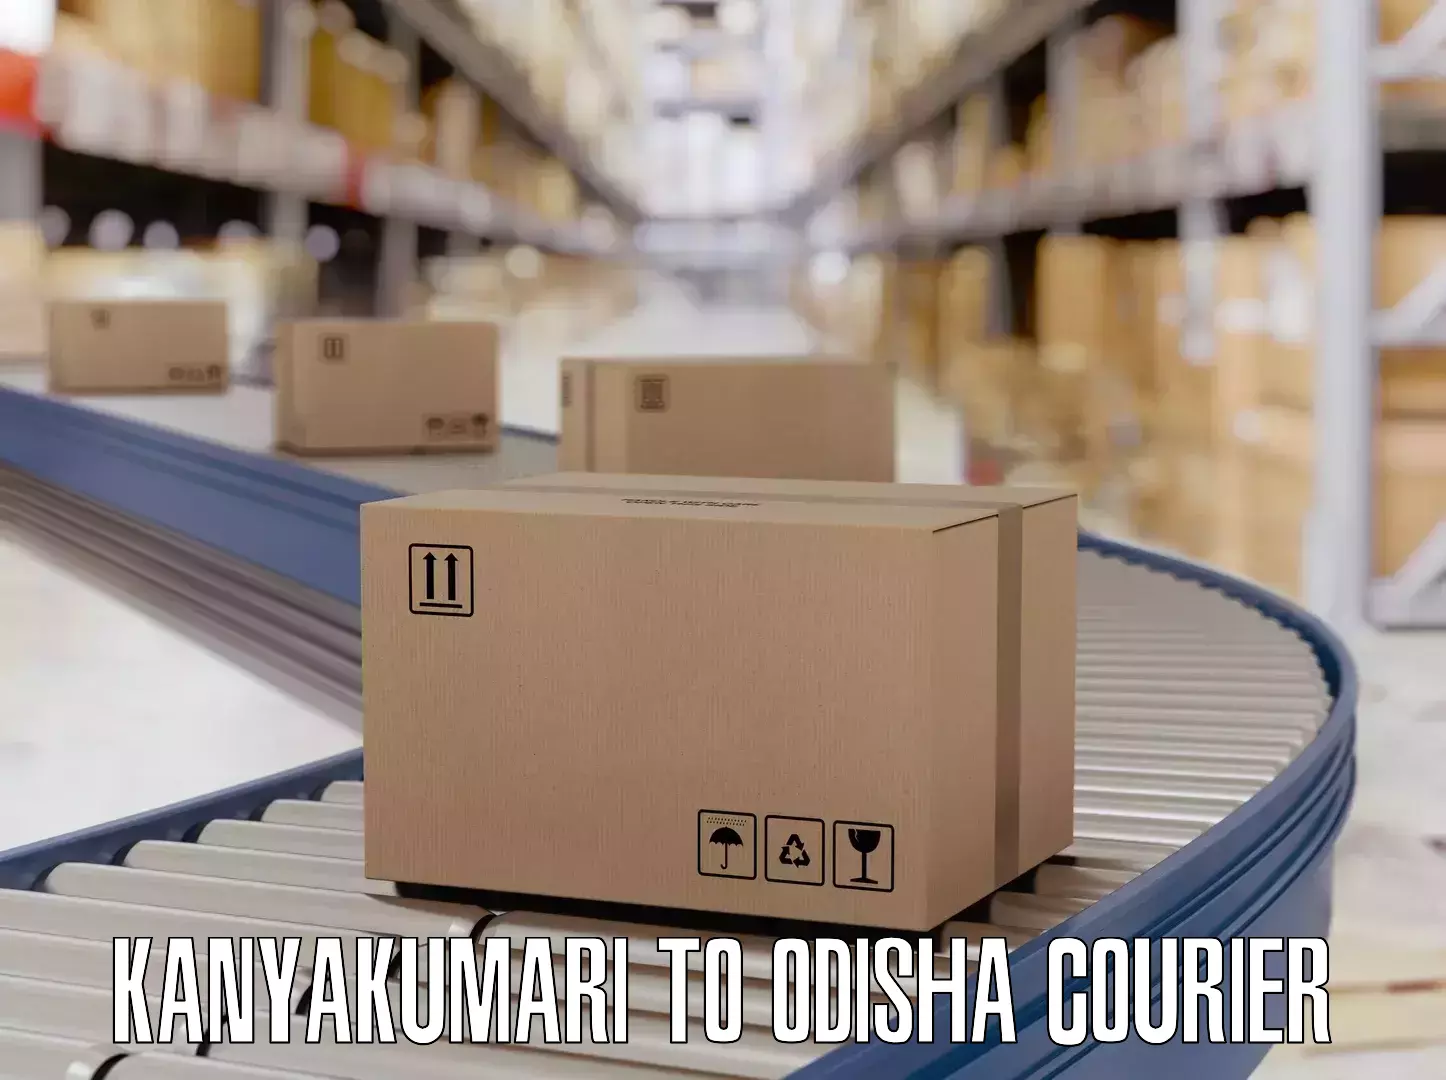 Luggage delivery app Kanyakumari to Odisha